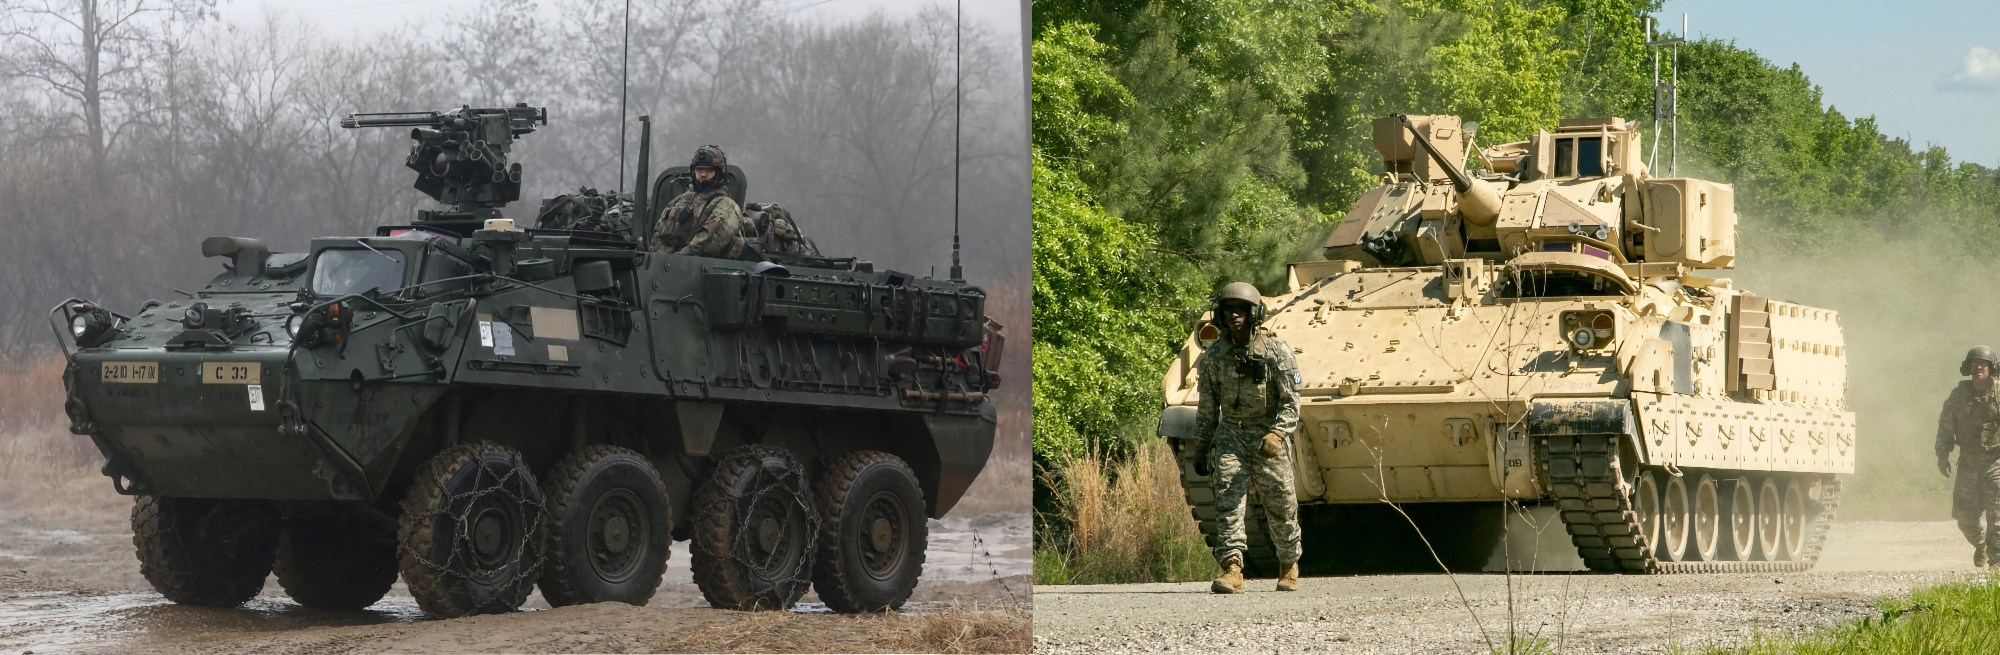 Bradley, bojowe wozy piechoty Stryker i amunicja do SAM-ów NASAMS: USA przygotowują nowy pakiet pomocy wojskowej dla Ukrainy o wartości 325 000 000 dolarów